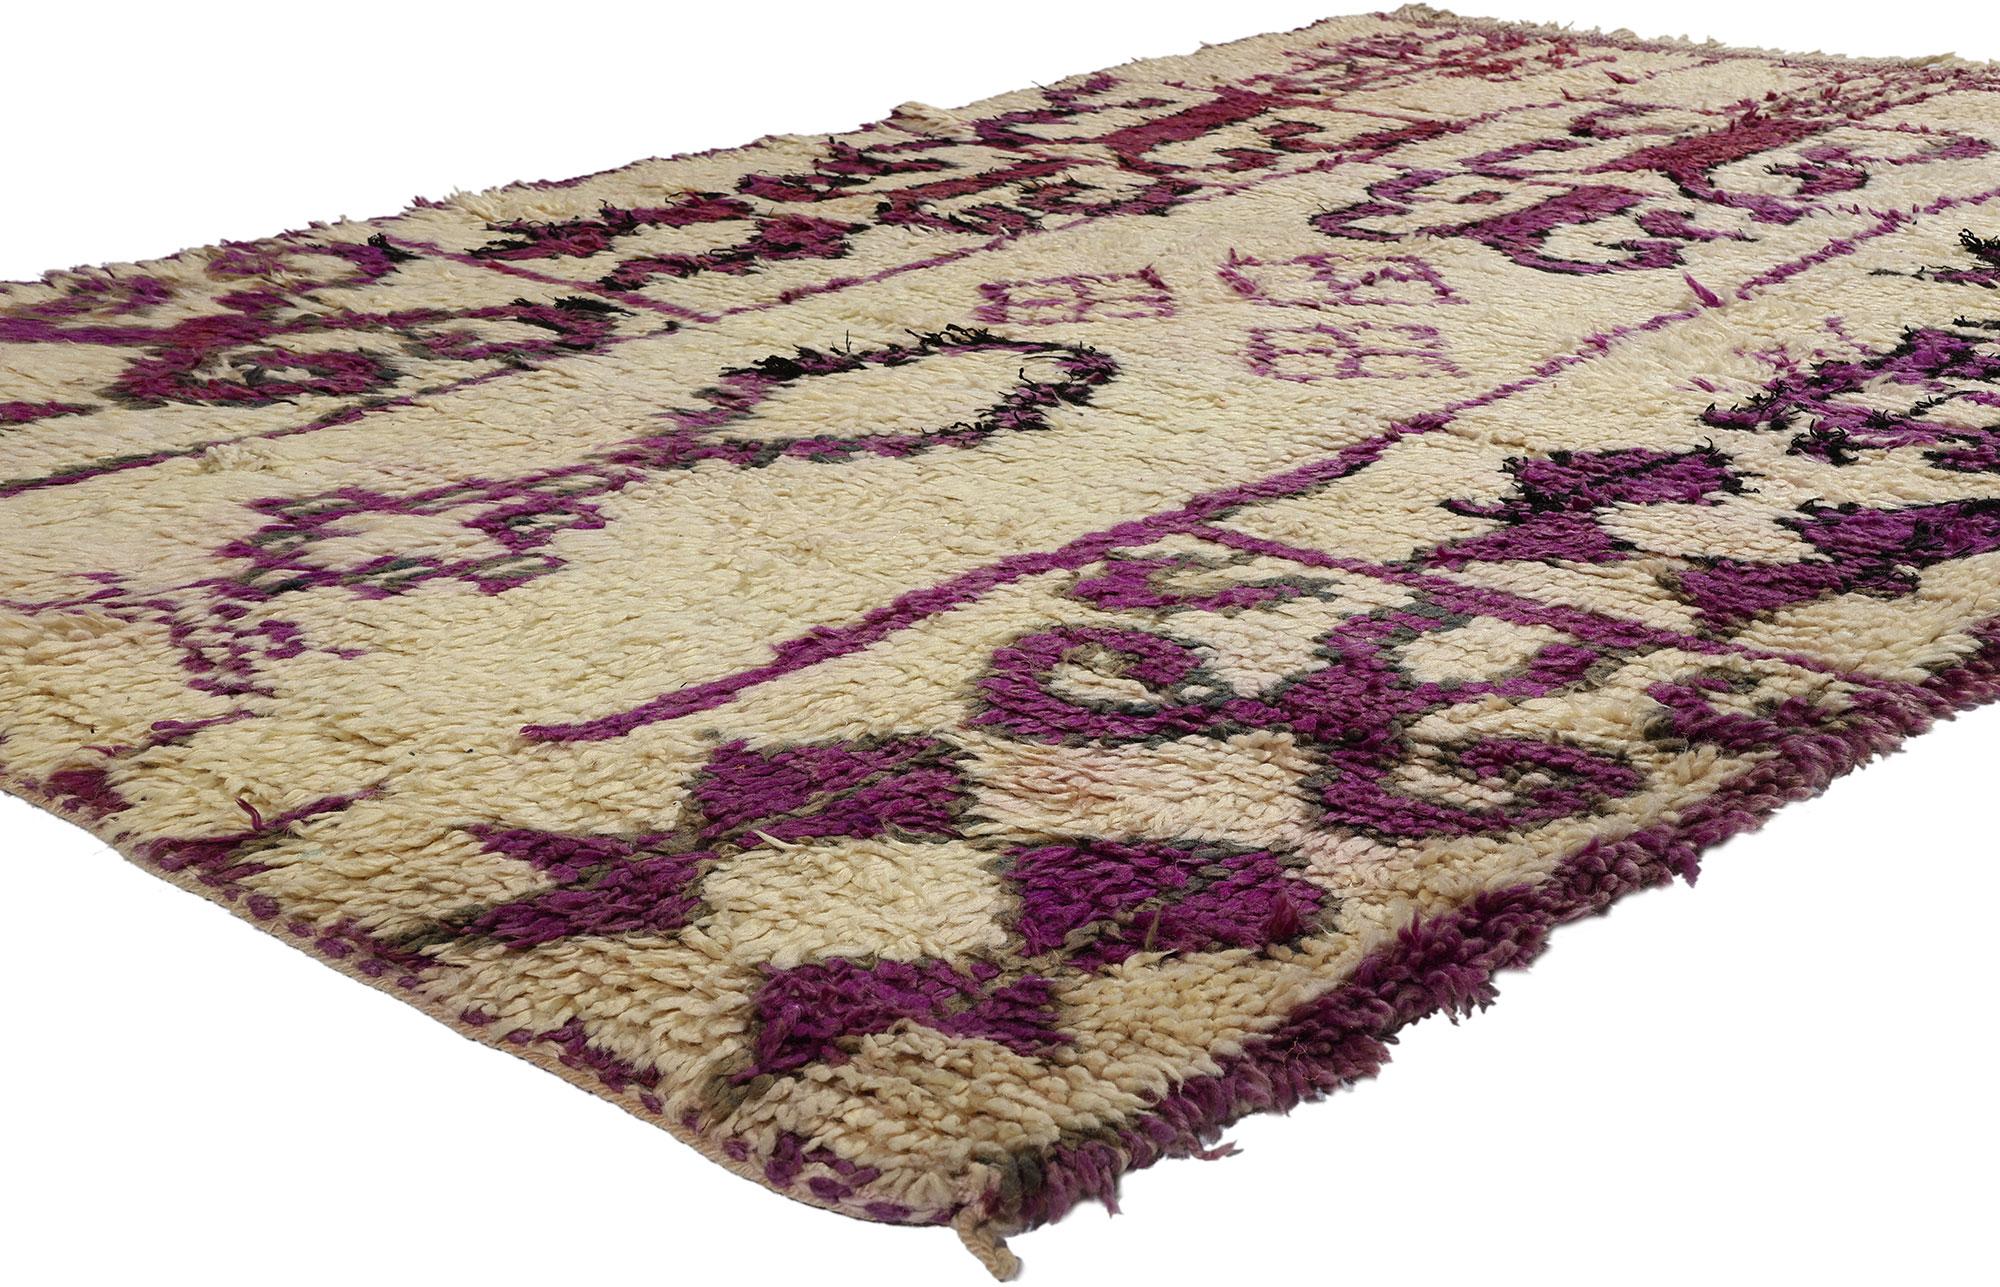 21728 Vintage Marokkanischer Azilal-Teppich, 05'02 x 07'10. Treten Sie ein in die lebendige Welt der Azilal-Teppiche, wo jeder zarte Faden eine Geschichte erzählt, die von geschickten Kunsthandwerkern inmitten der dynamischen Landschaften